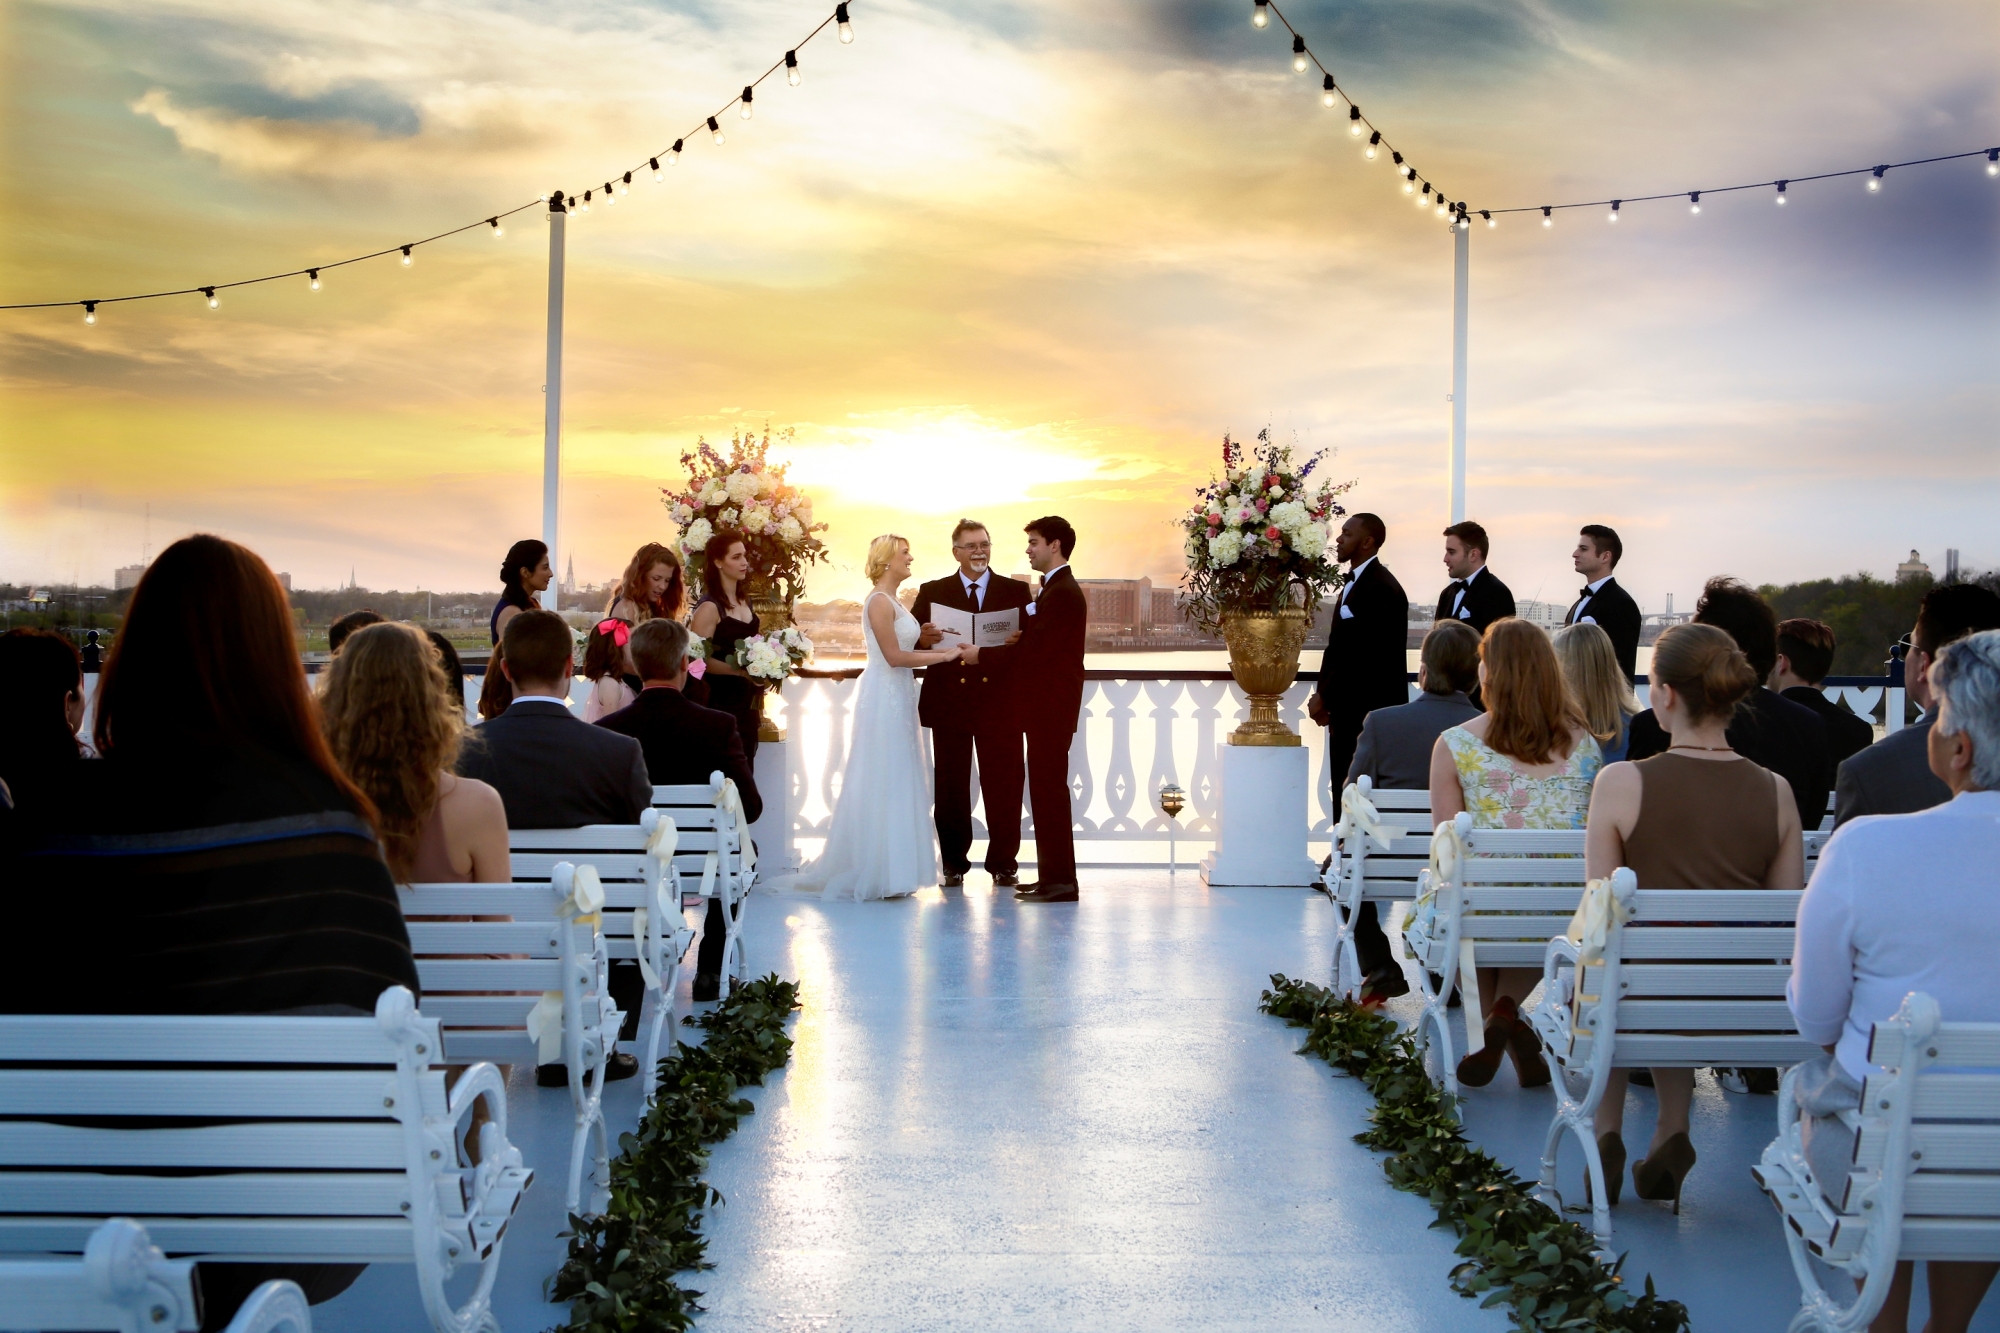 Enchanting top-deck wedding ceremonies.